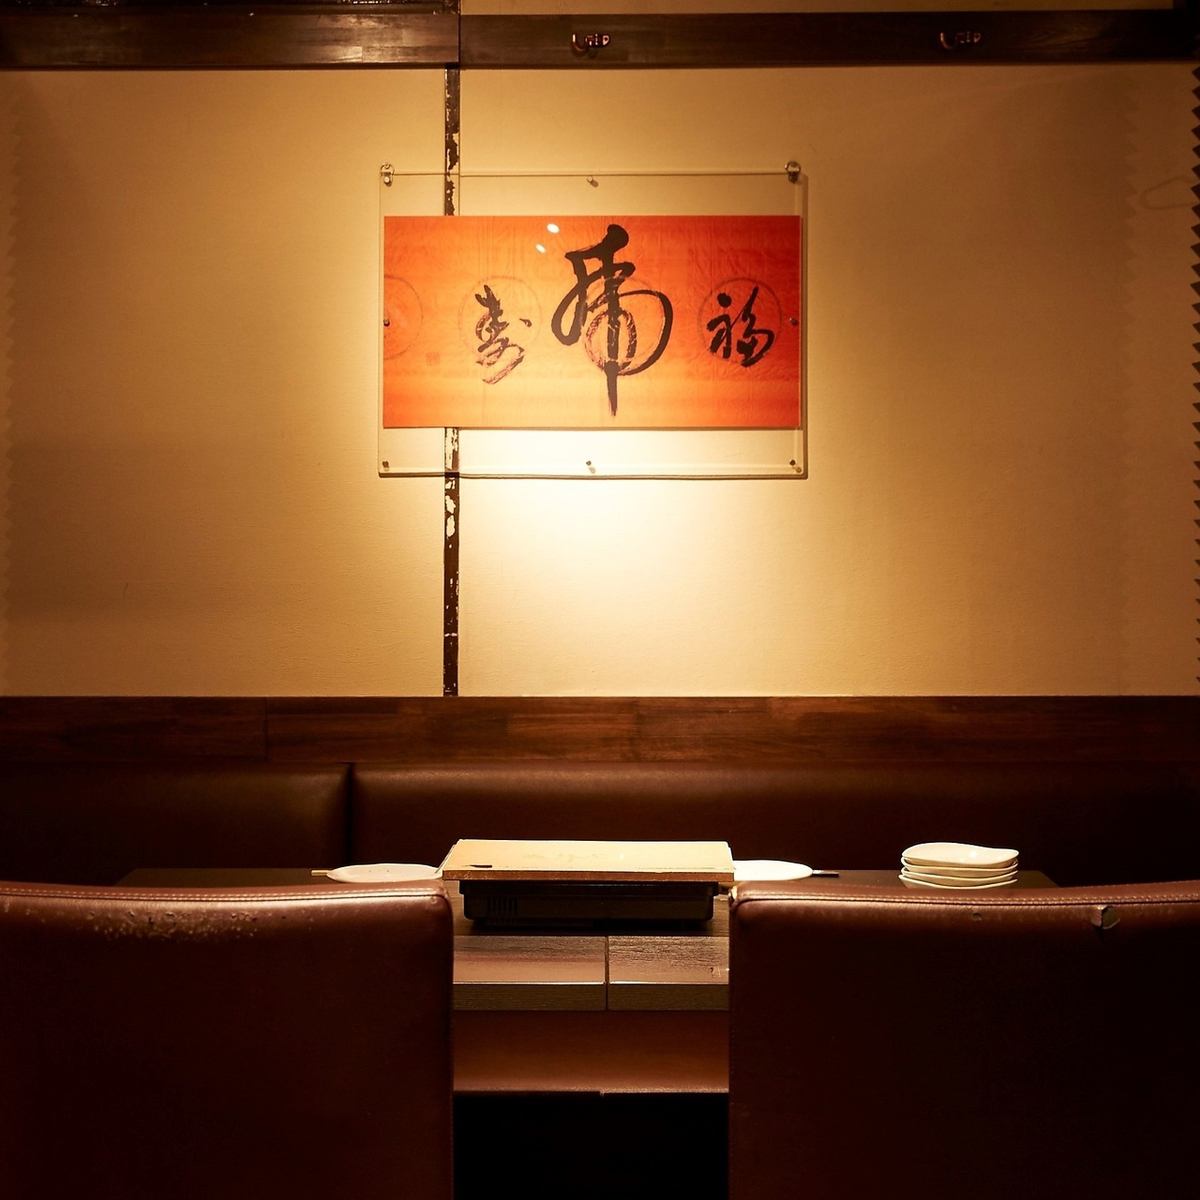 전석 개인실의 일본식 공간 / 레이아웃 자유로운 점내 / 인원수 · 장면에 맞추어